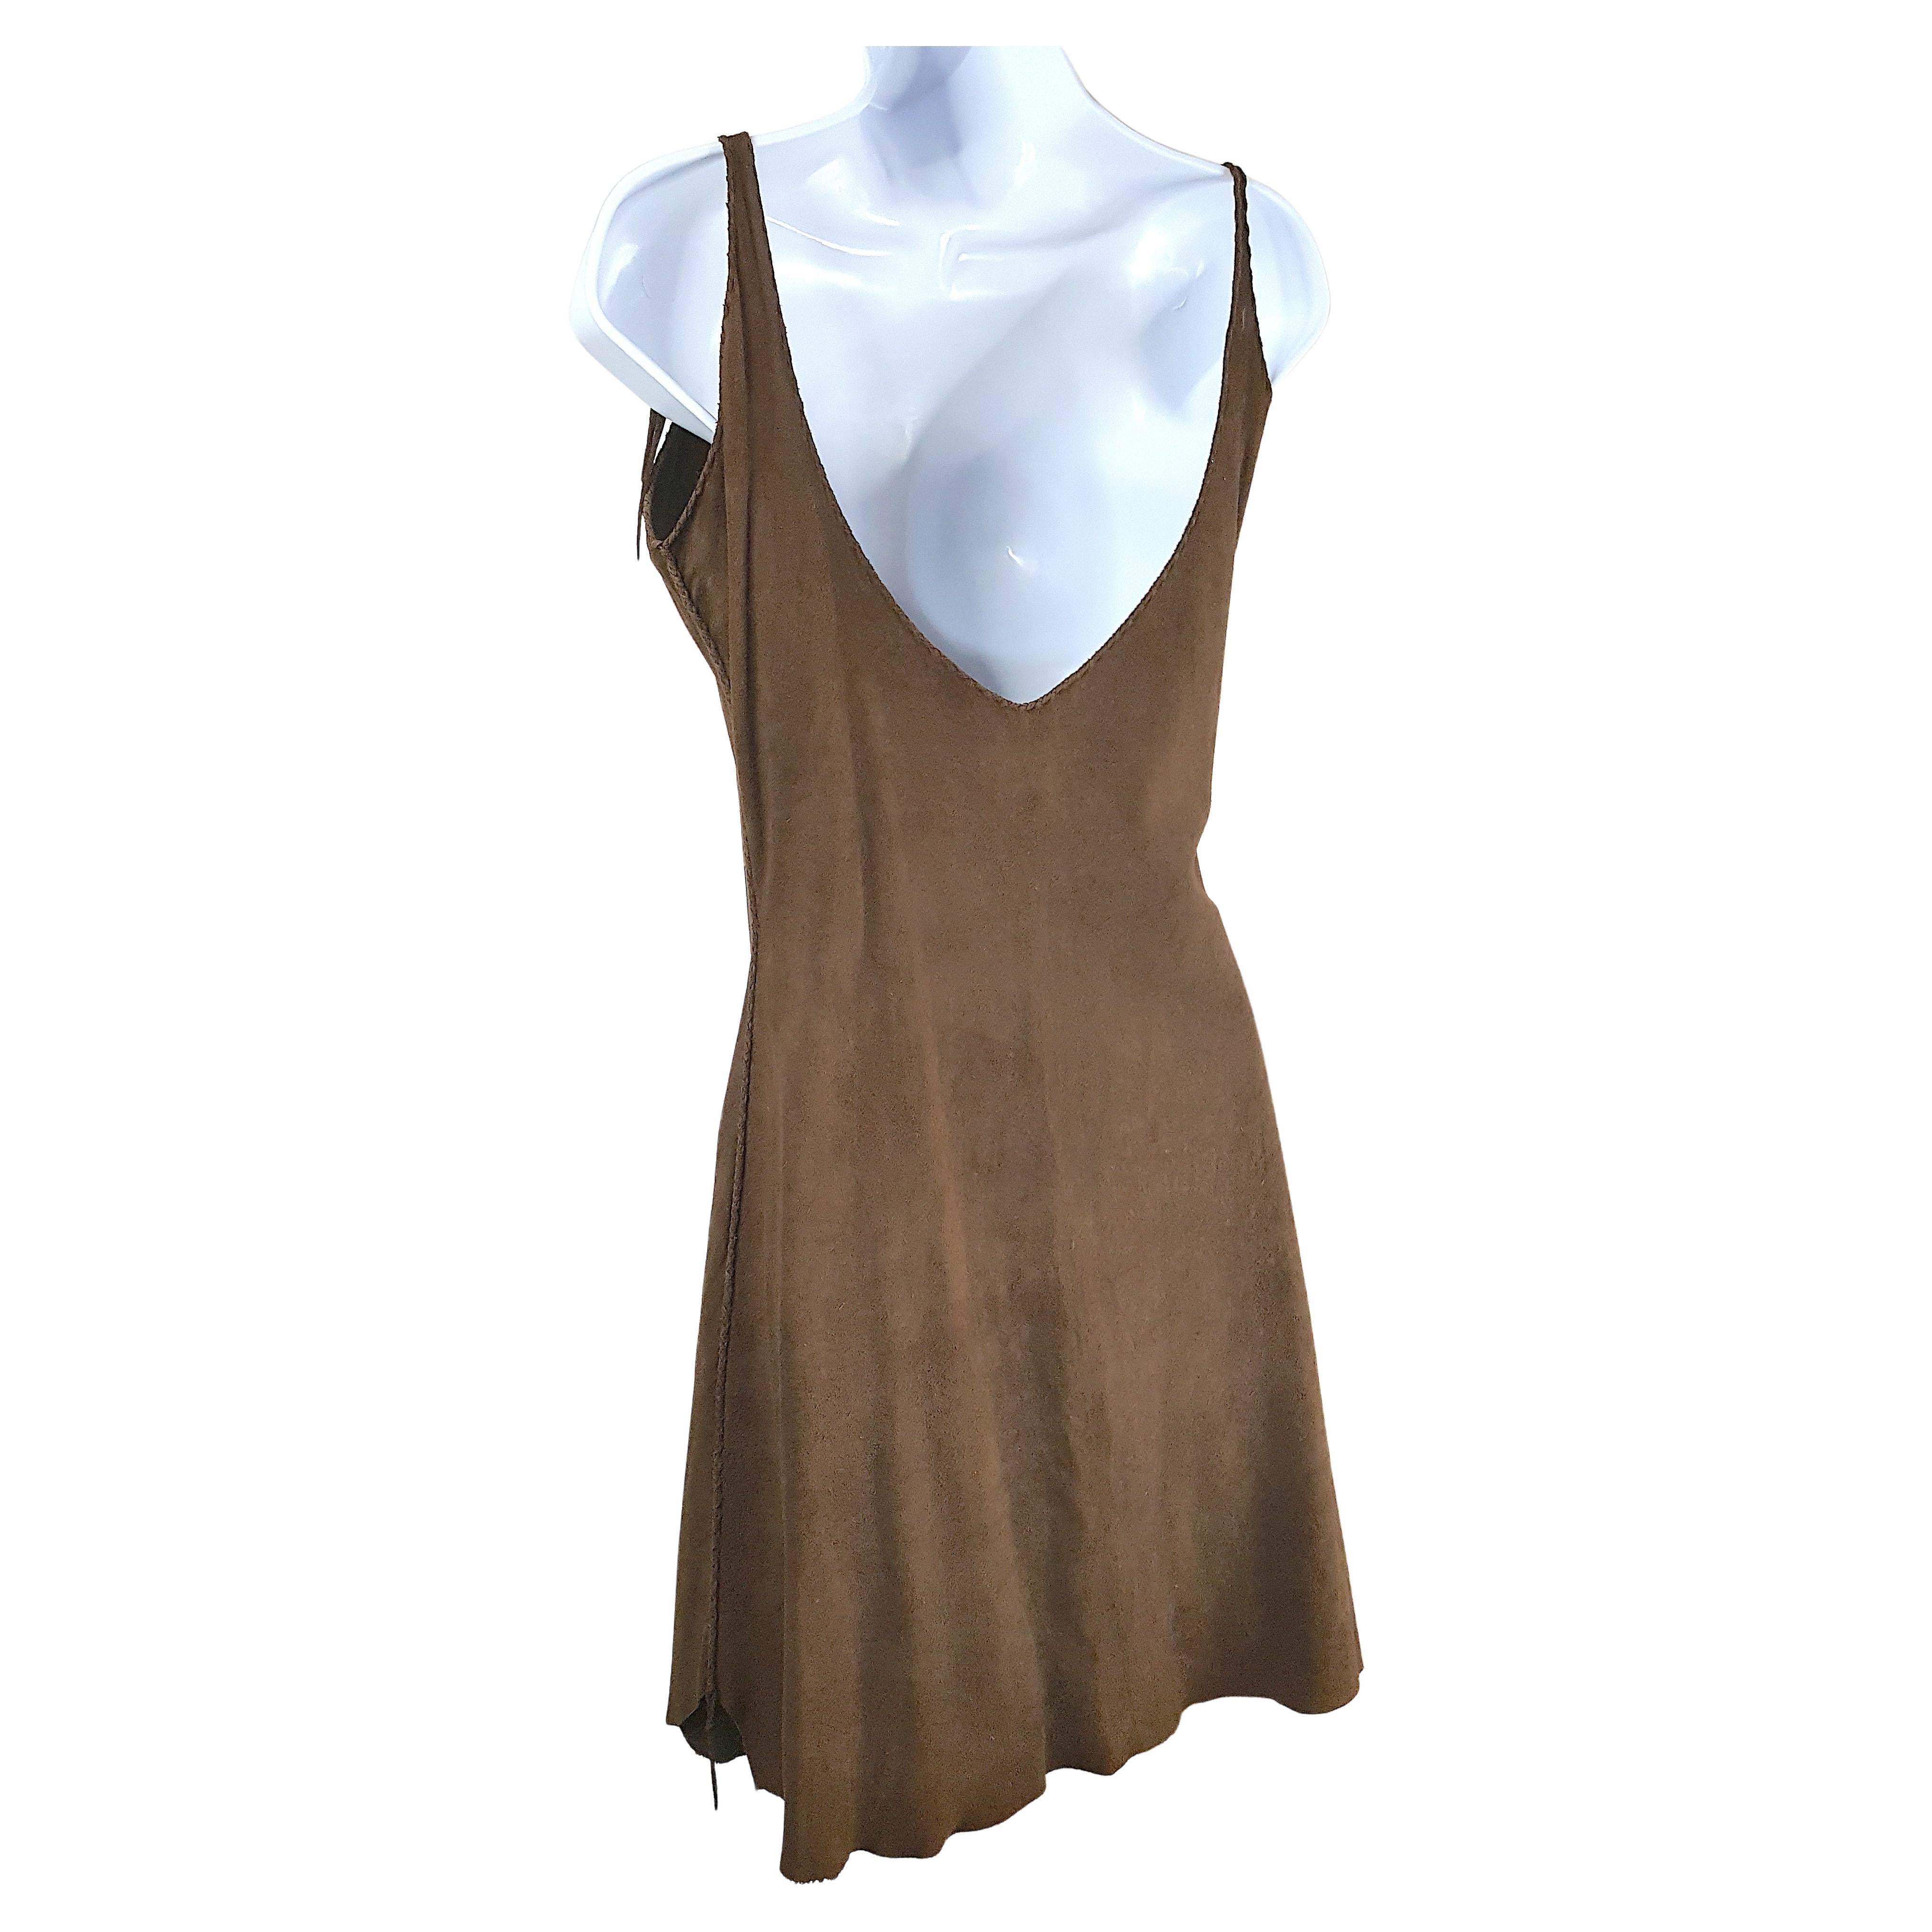 Cette ancienne robe chemise sans manches en cuir chamoisé brun, fabriquée à la main à l'époque des réserves, entre 1870 et 1930, est faite de deux peaux d'animaux souples et douces, ce qui donne une longueur d'ourlet légèrement irrégulière. Au lieu